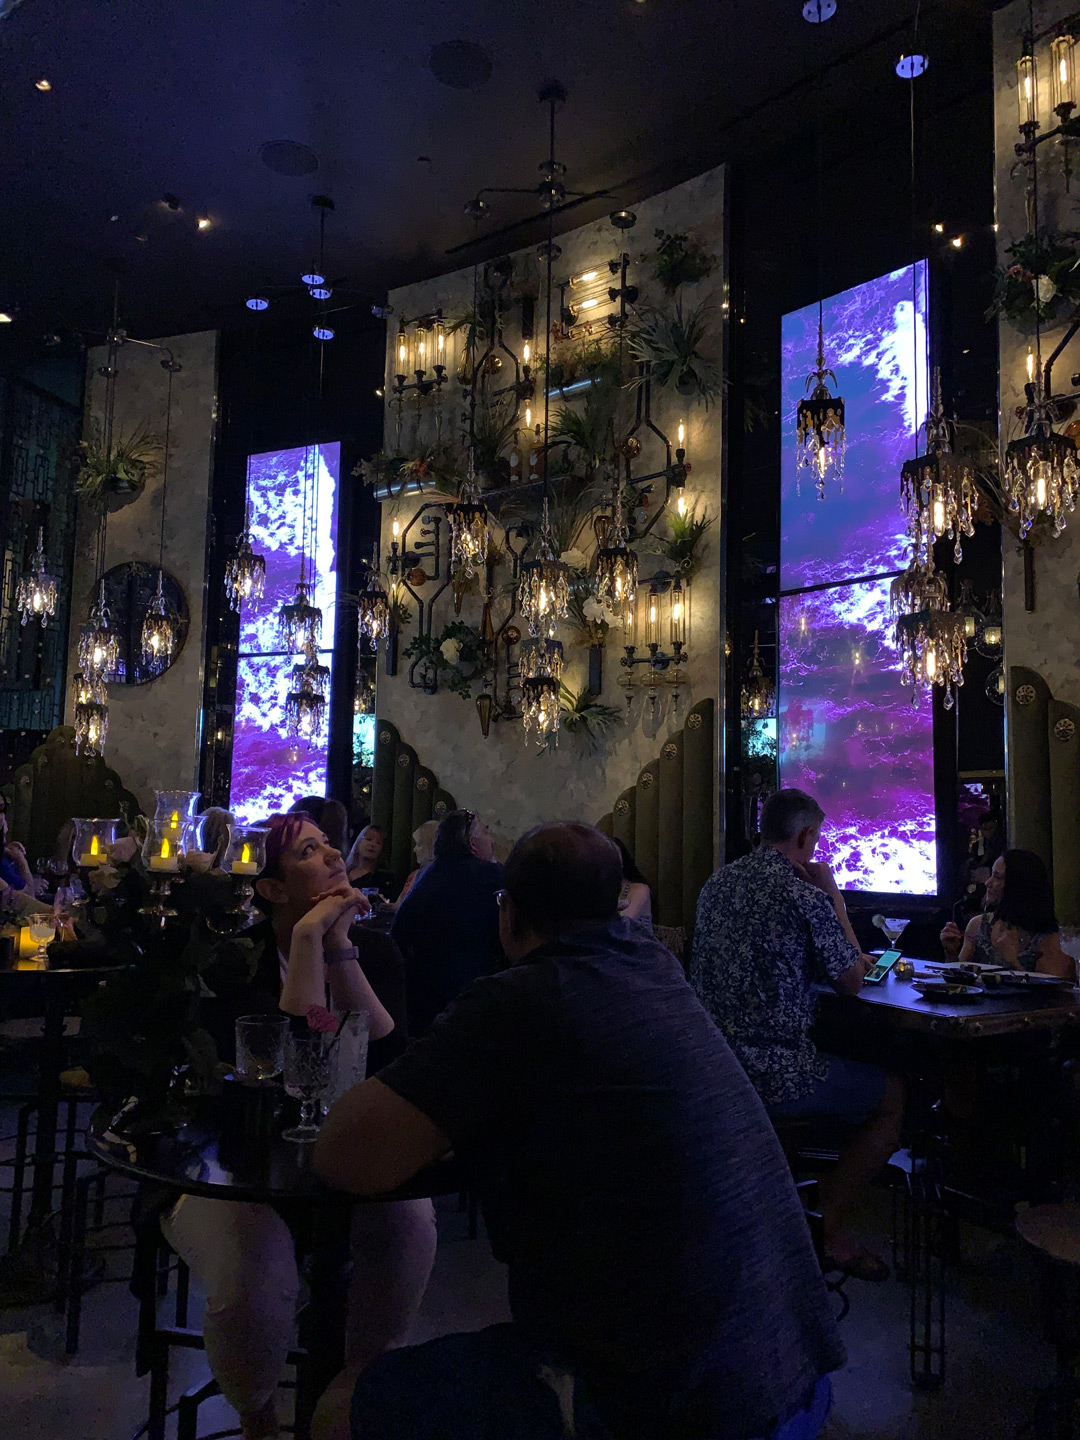 Best Bars in Las Vegas? Visit Vanderpump Cocktail Garden in Caesar's Palace